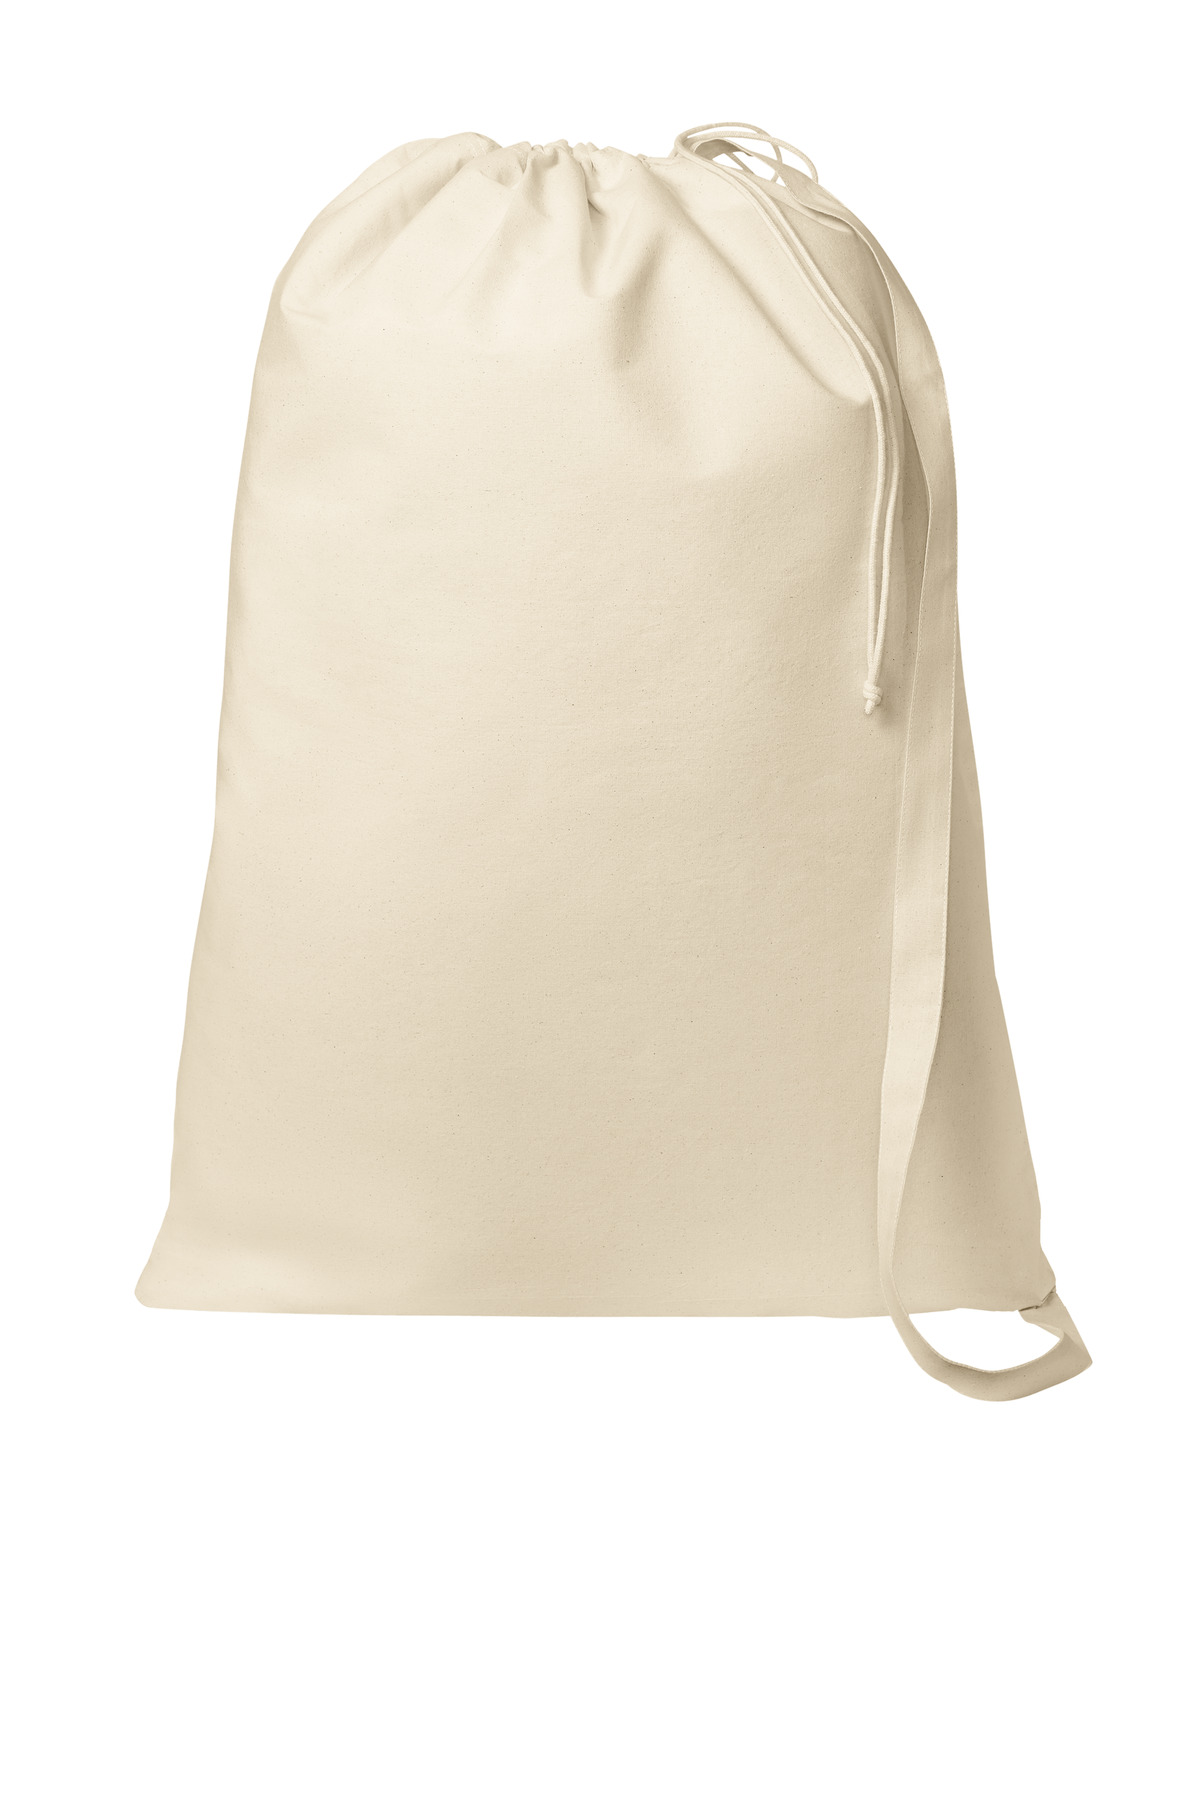 Port Authority Core Cotton Laundry Bag-